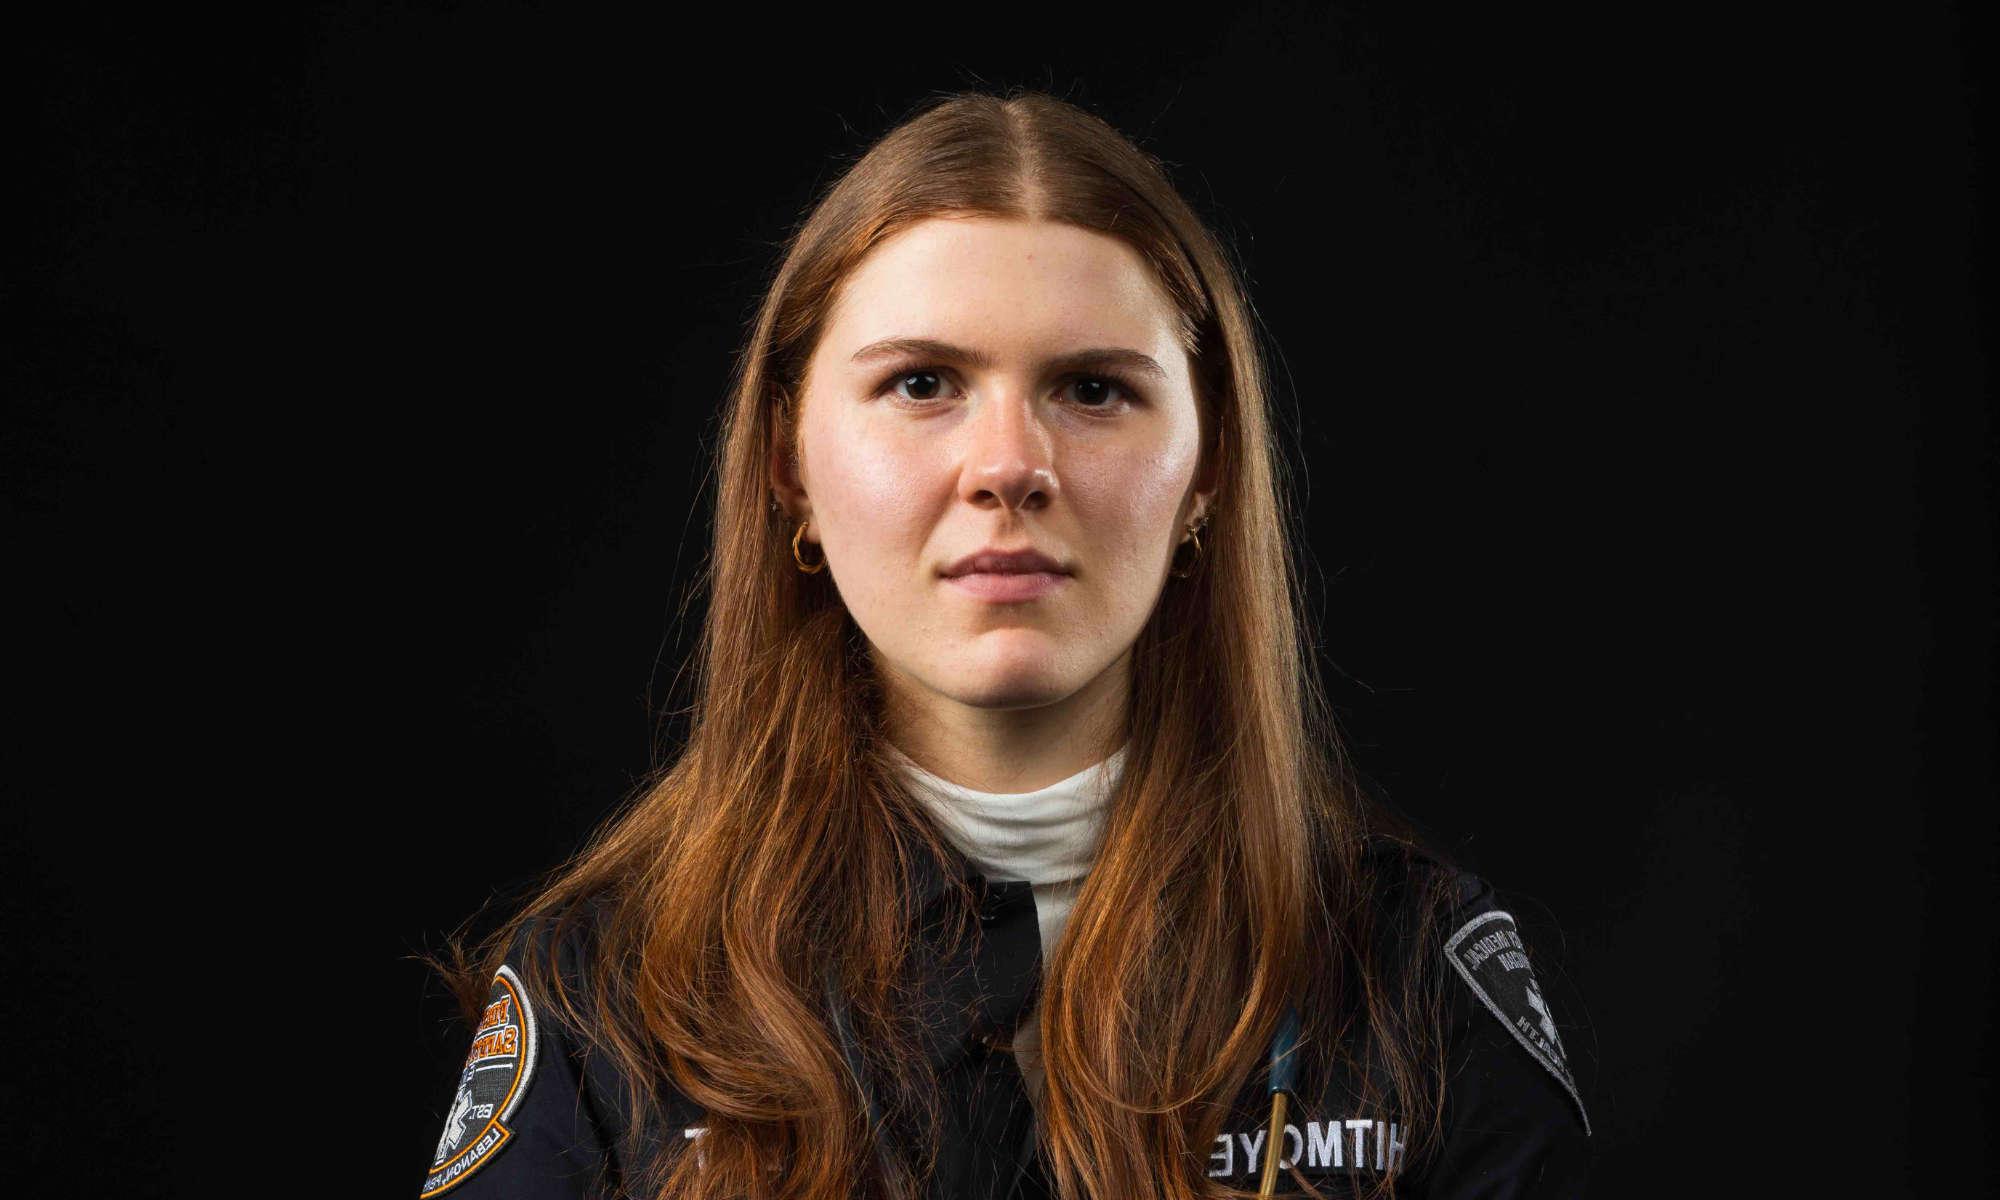 关闭-up horizontal of Rachel Whitmoeyer against a black background in an EMT uniform staring at the camera.